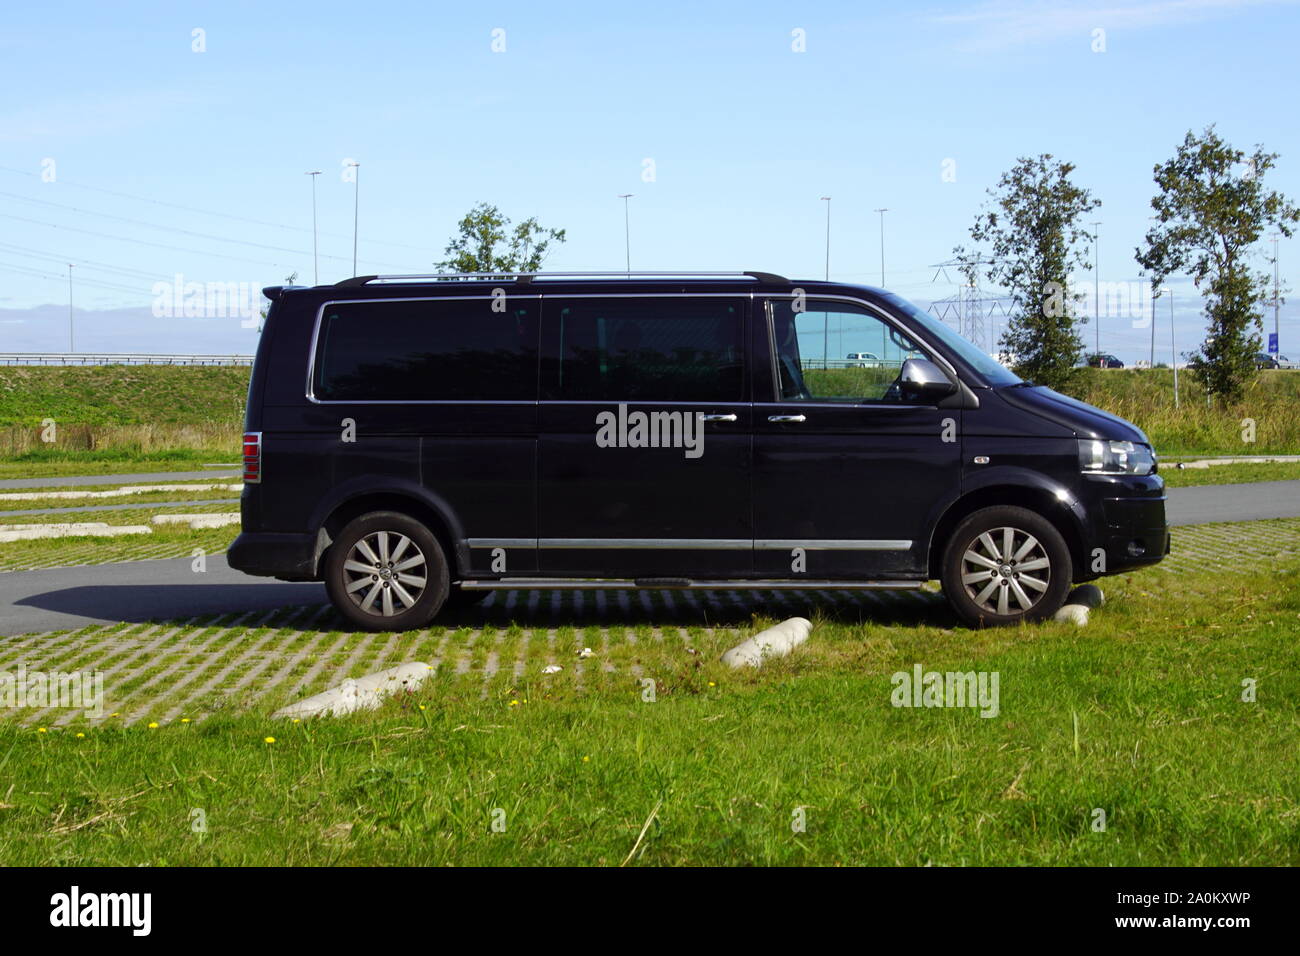 Almere, Niederlande - 20 September, 2019: Schwarz Volkswagen Transporter Überwachung/Privatdetektiv van mit Verblindeter Windows. Stockfoto